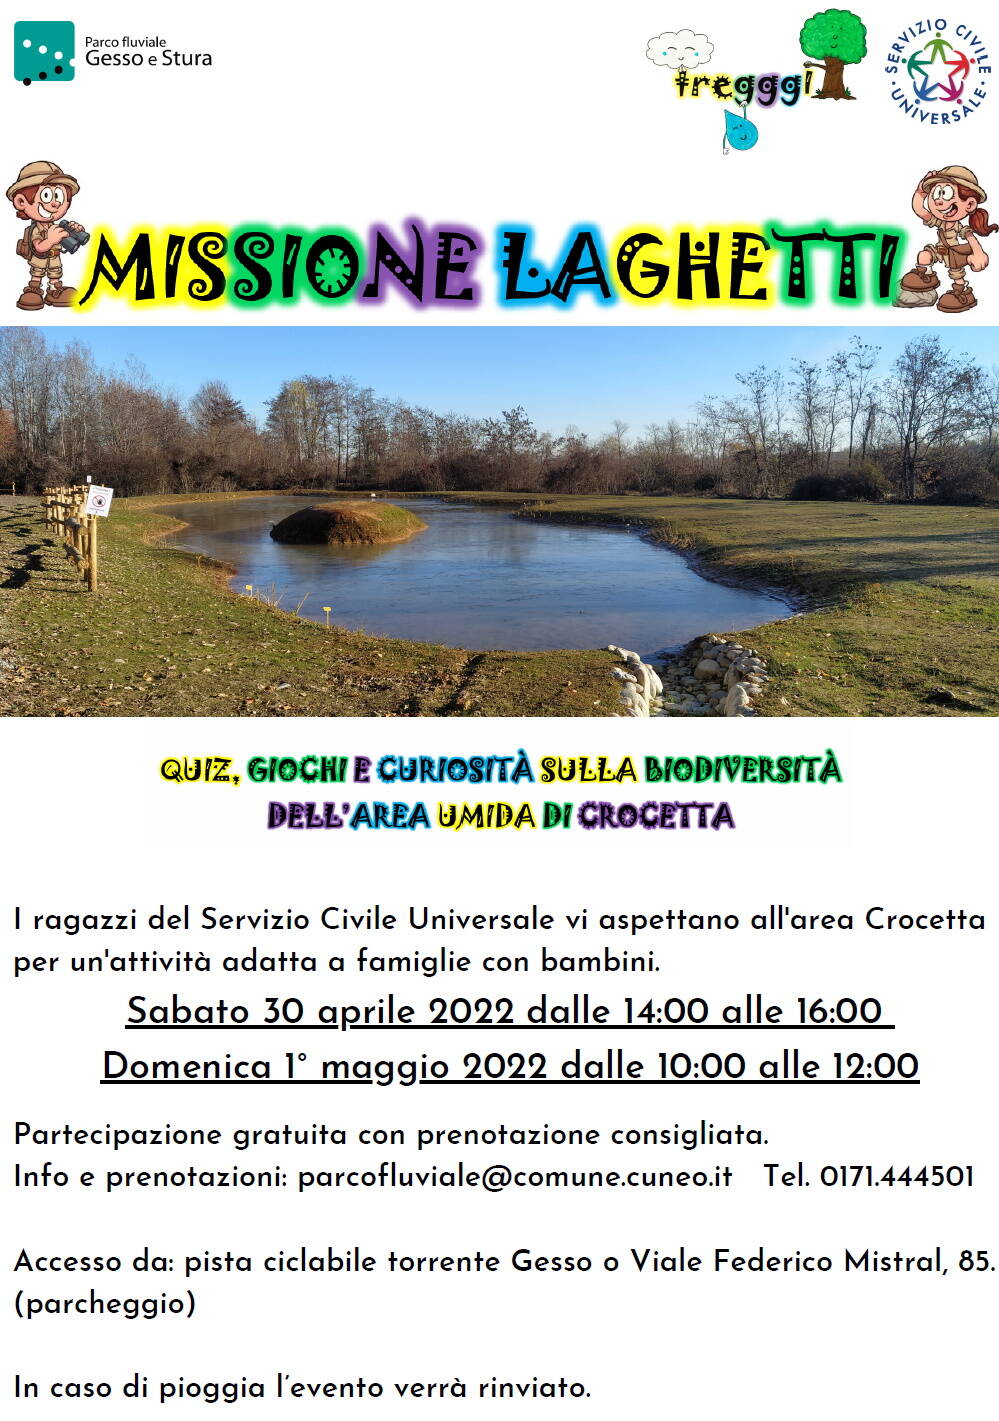 Cuneo, alla scoperta della nuova area umida di Crocetta con “Missione Laghetti”